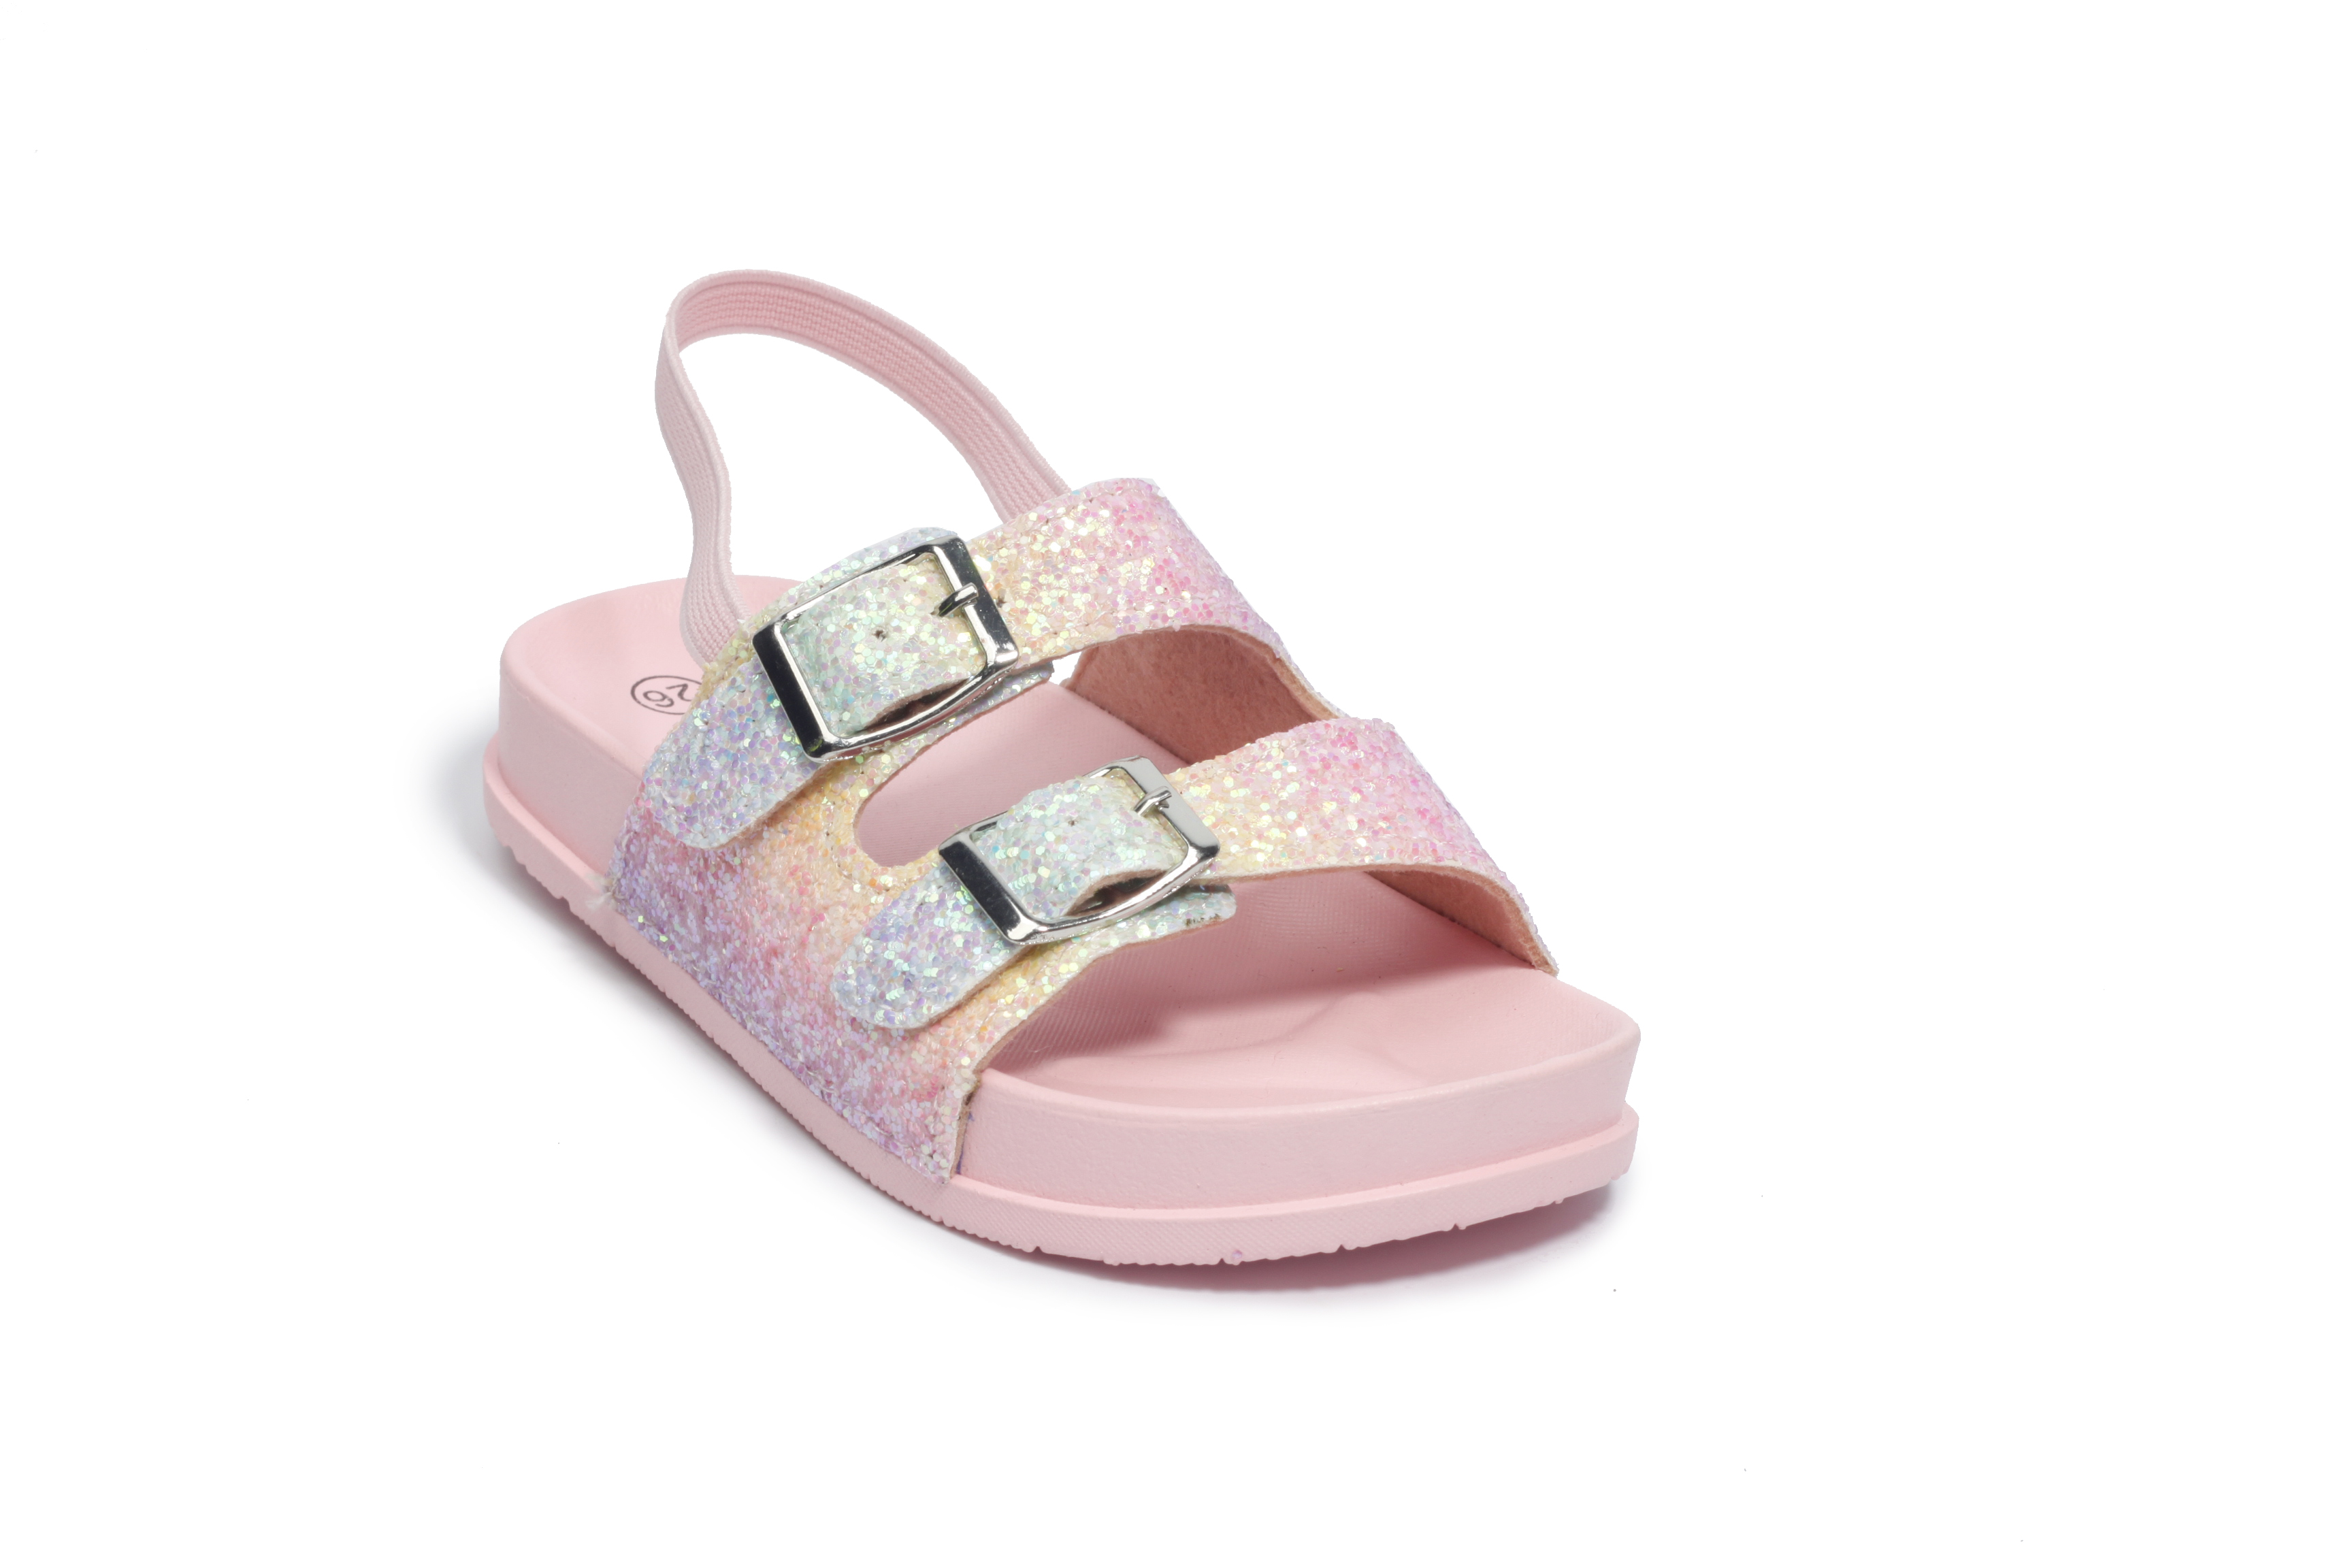 Girls' Sandals Slip On Double Buckle Slide Sandal Pink Glitter - Sizes 7-12 - image 1 of 1